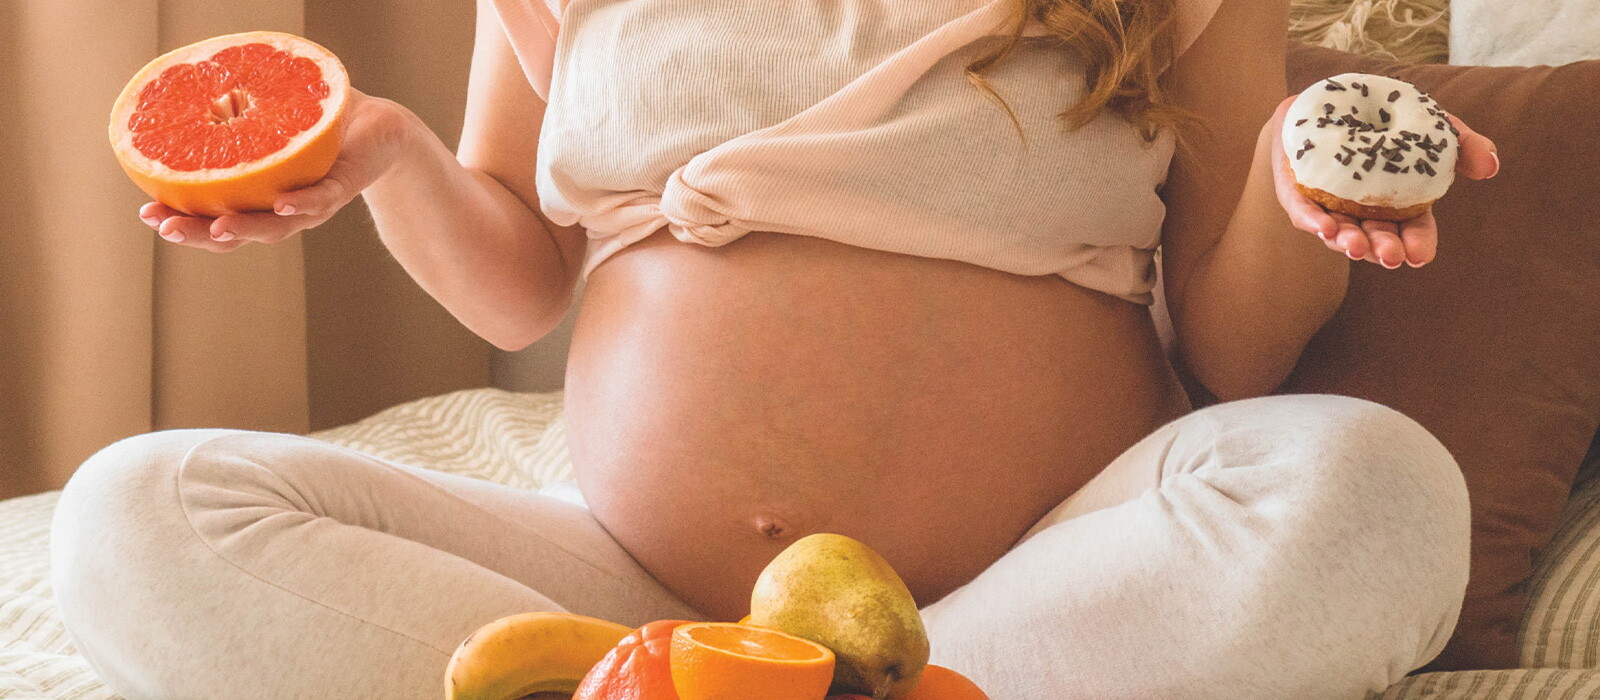 孕期經常口淡淡，很想吃零食，有健康零食可推介嗎？